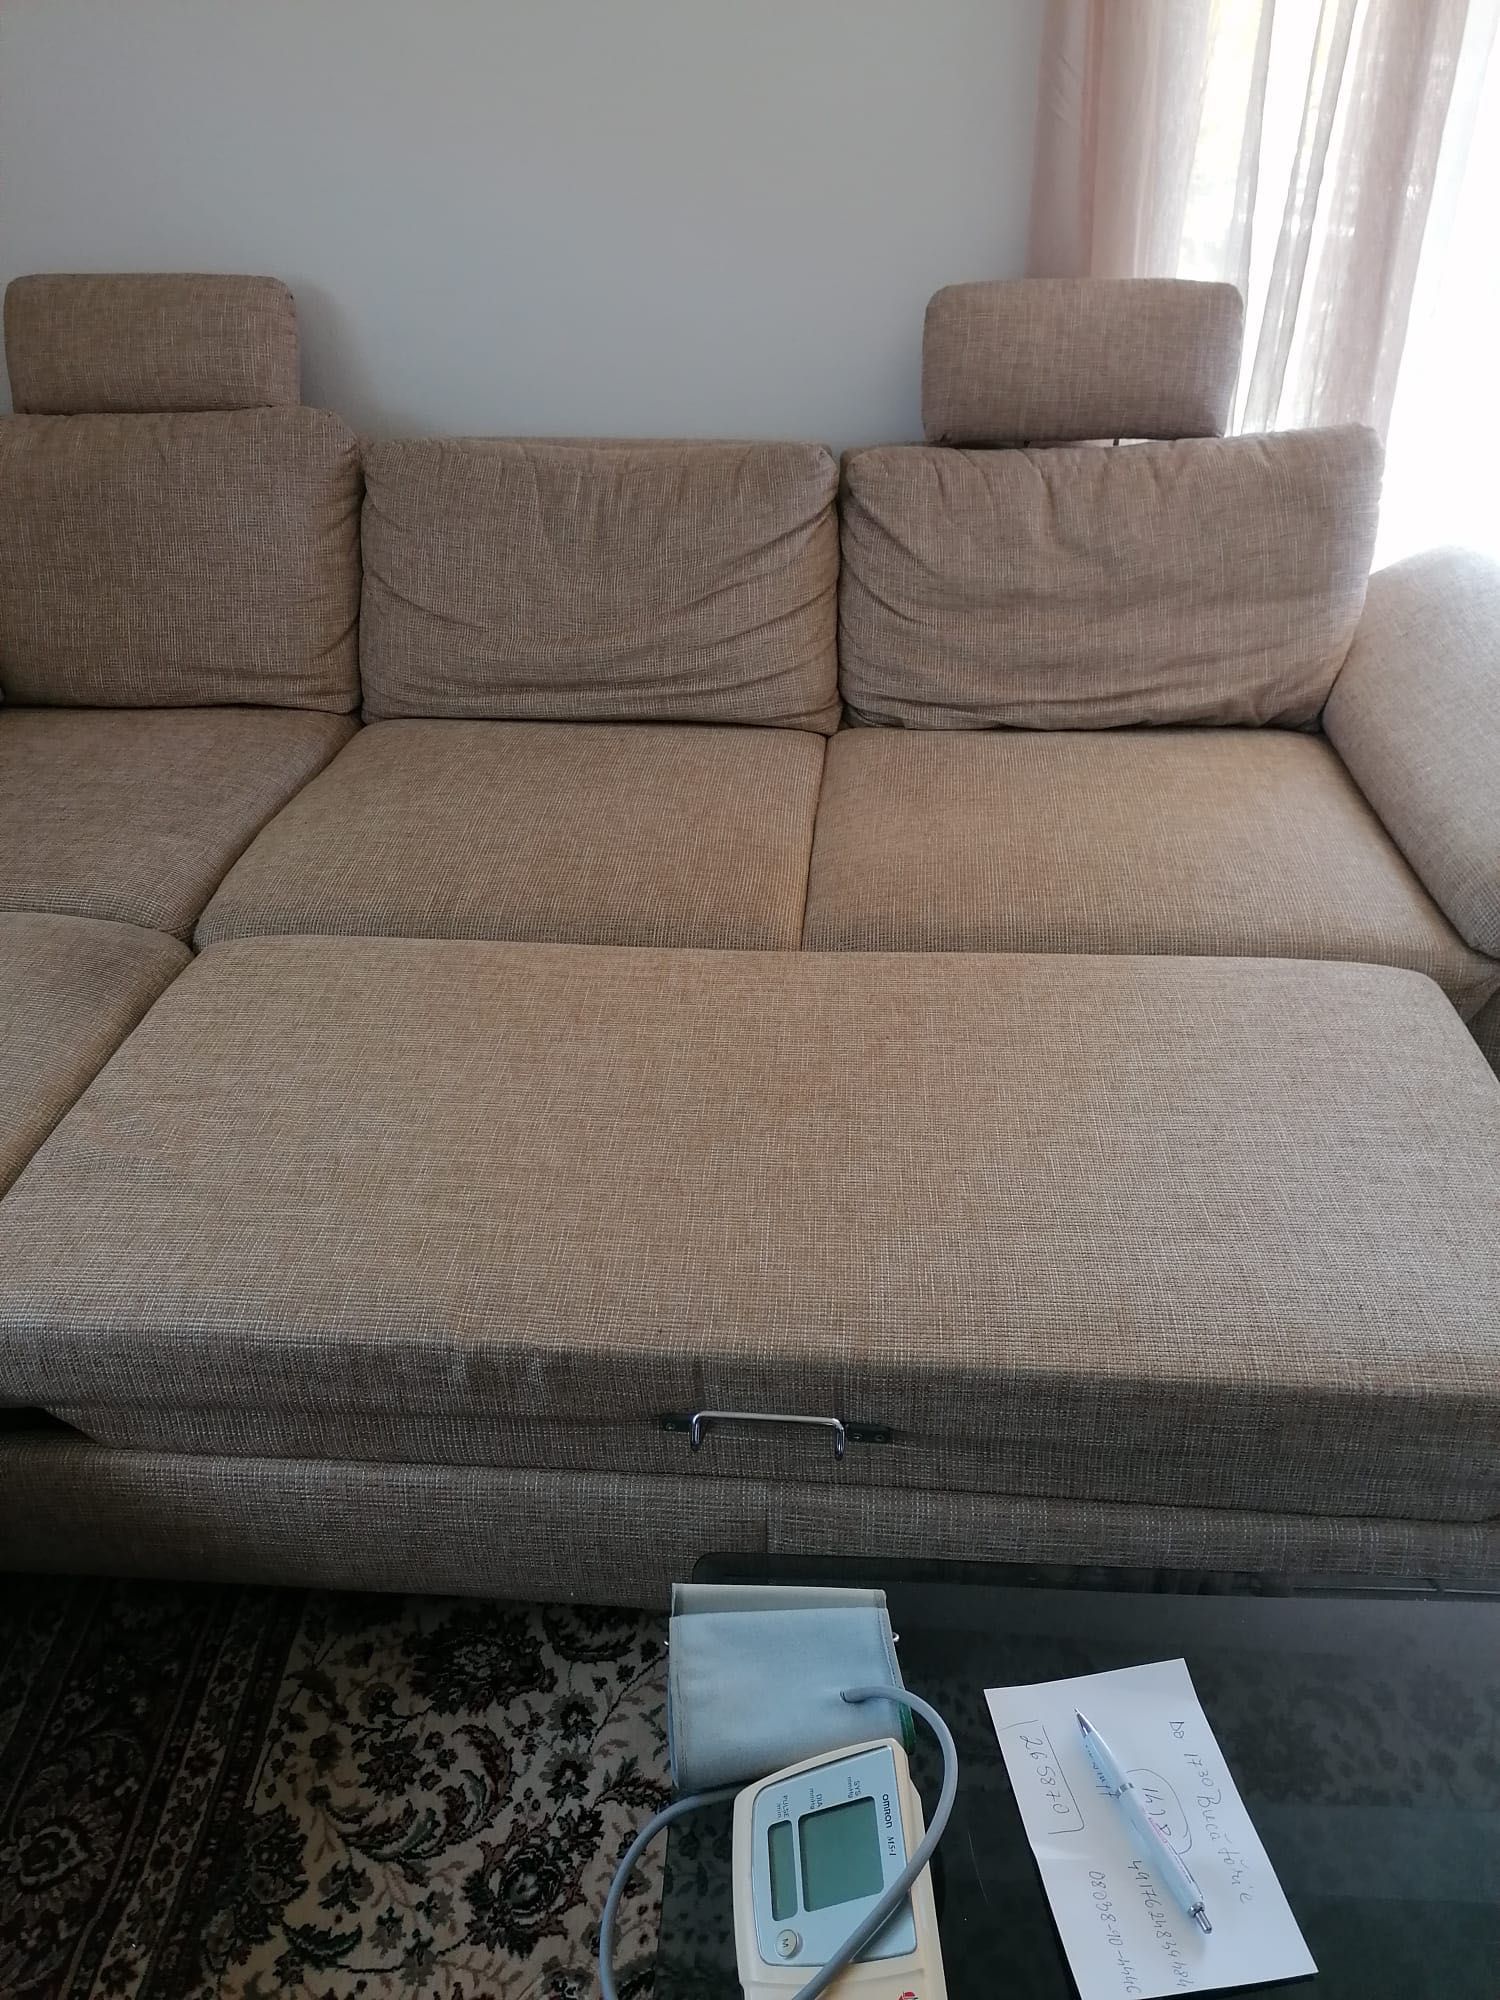 Sofa pe colt extensibila